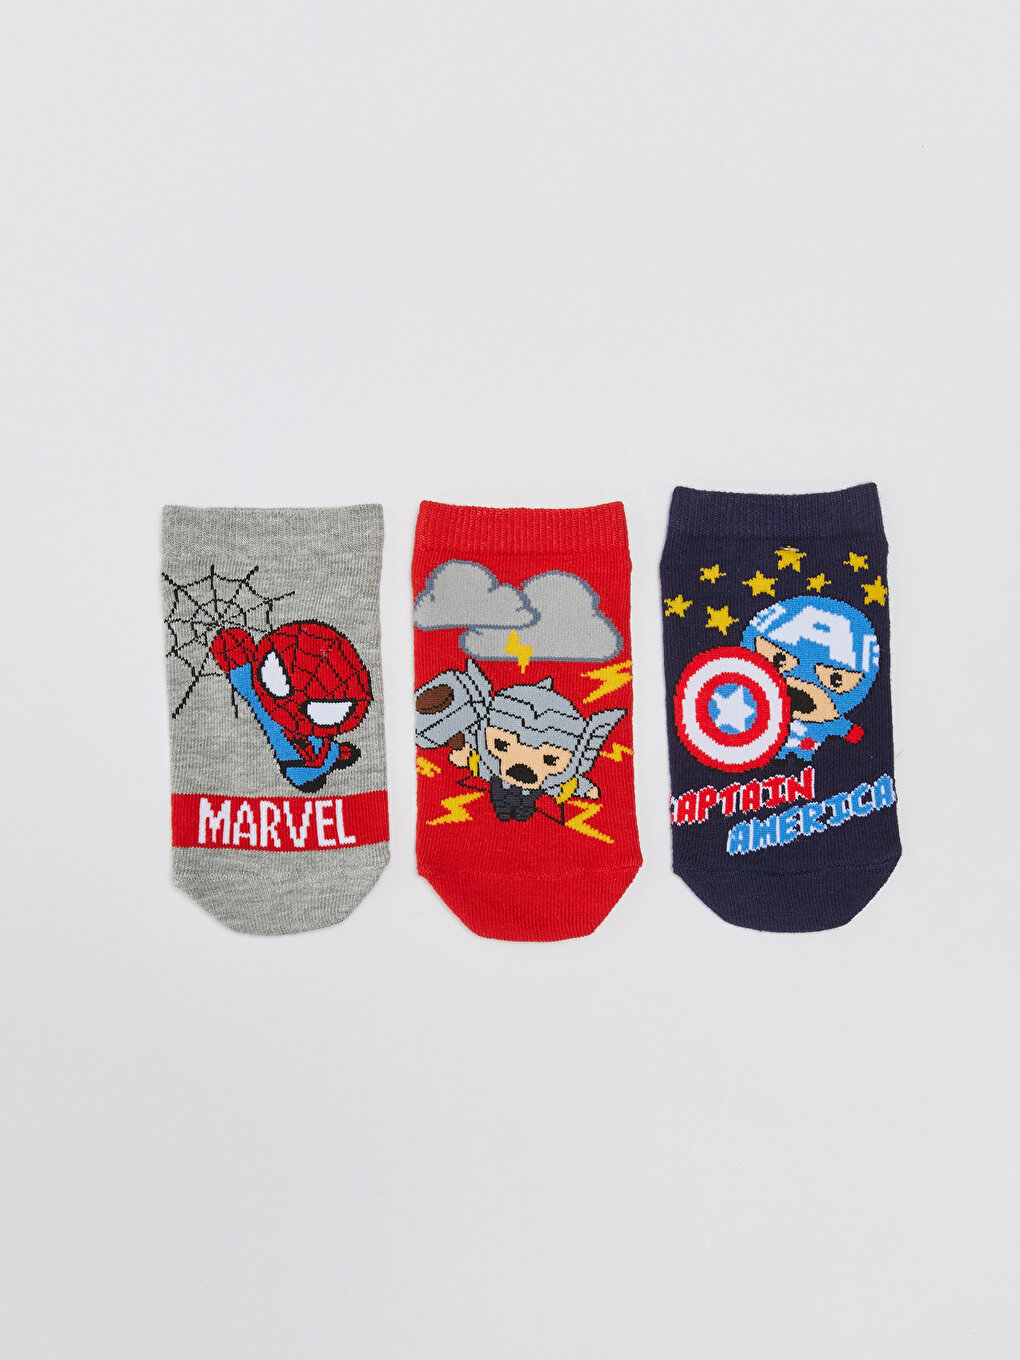 Marvel Patterned Boys Booties Socks 3 Pack -S39169Z4-K00 - S39169Z4-K00 -  LC Waikiki